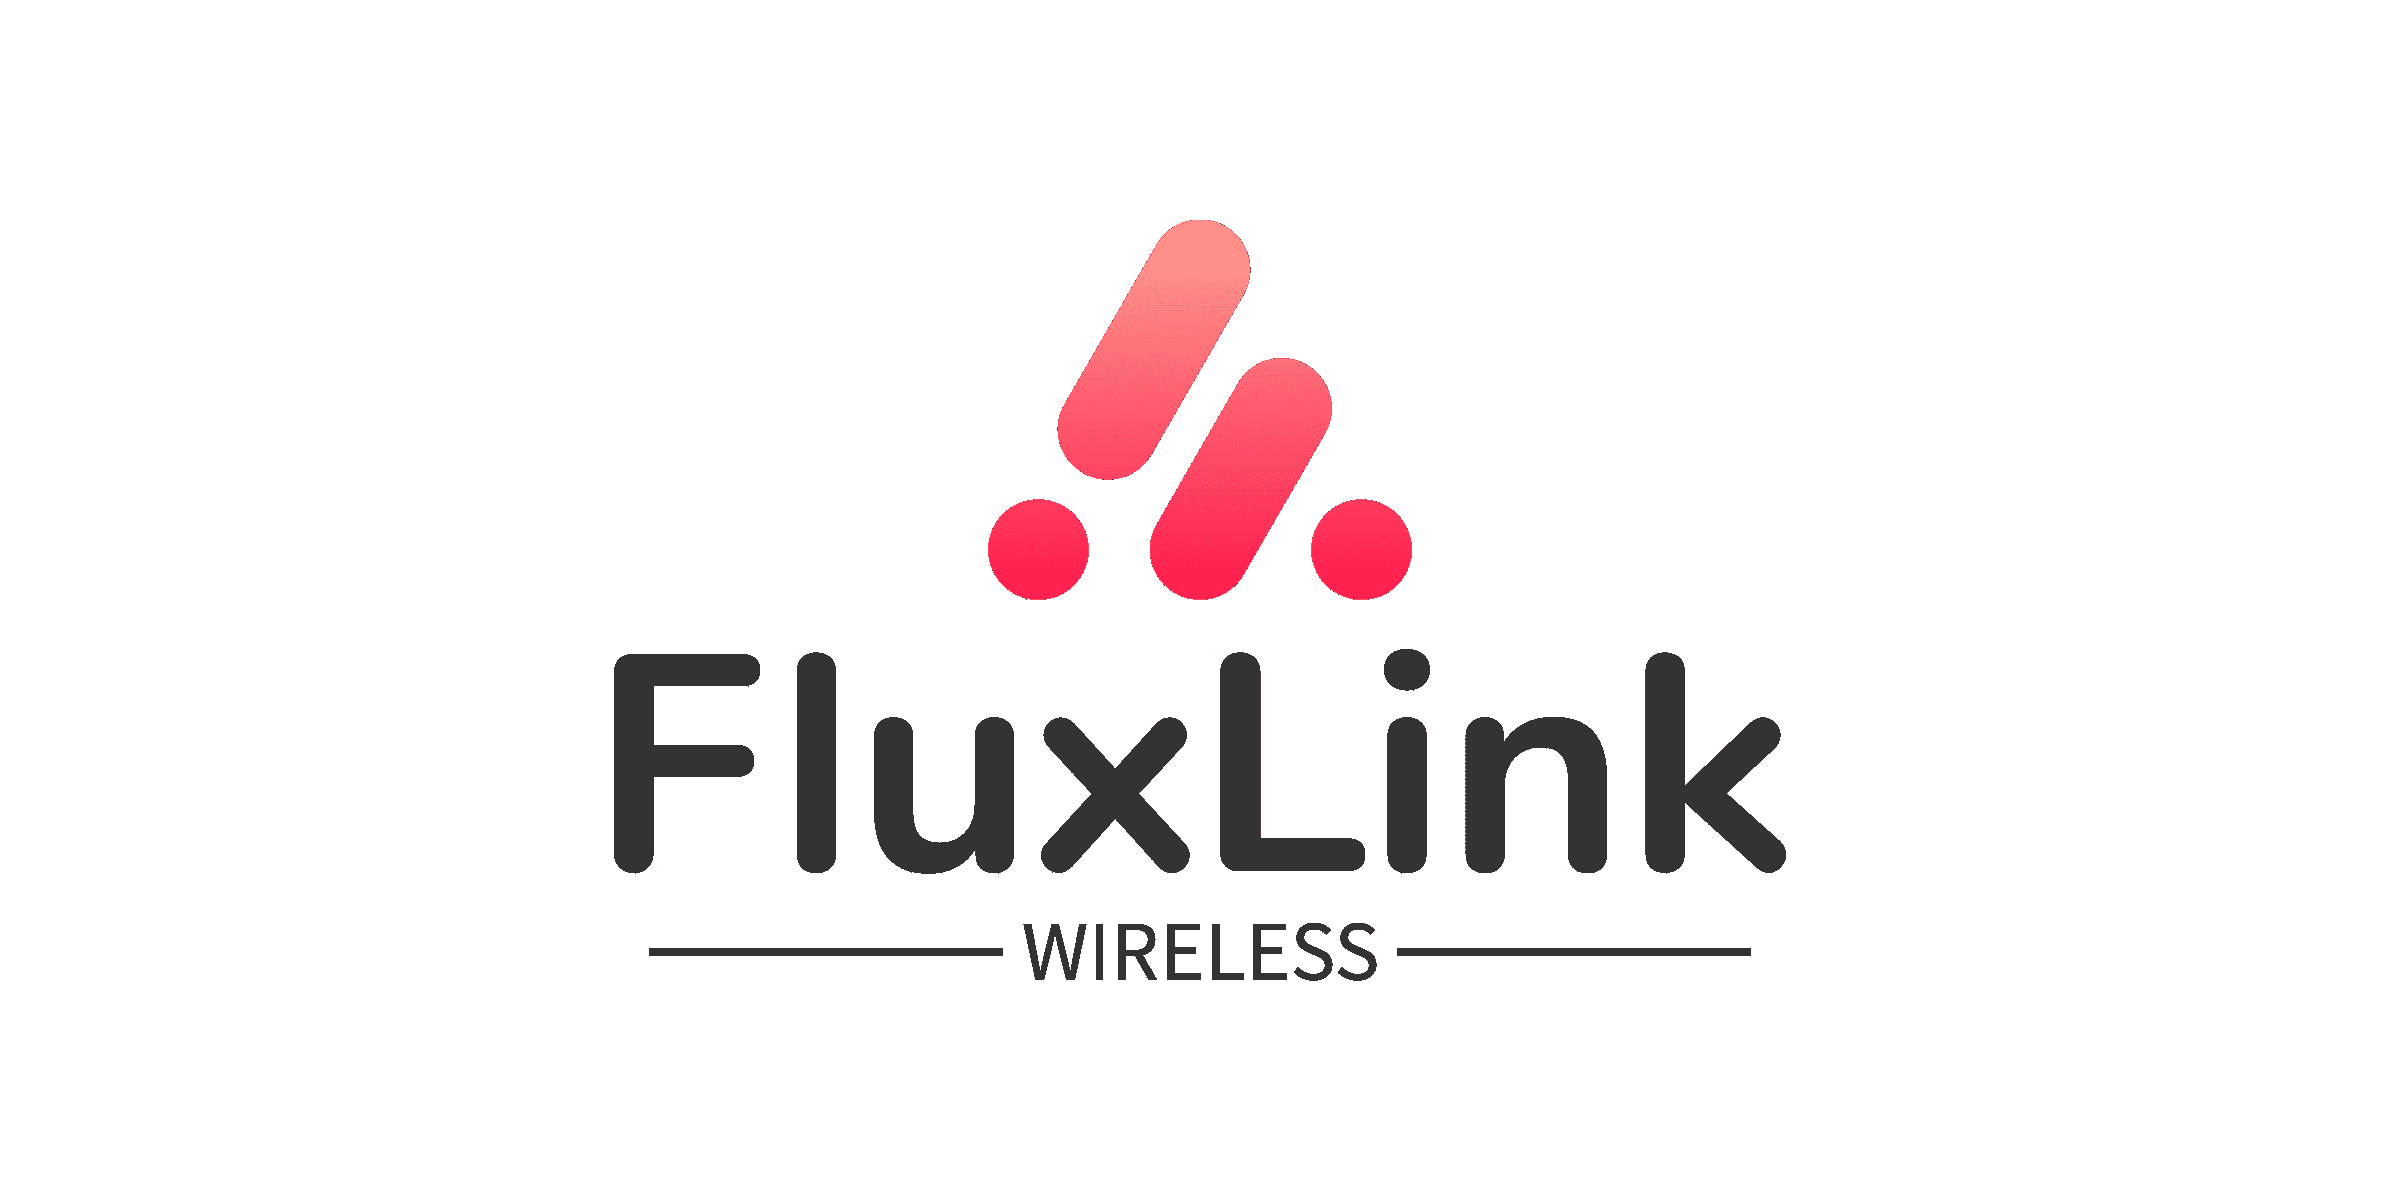 FluxLink